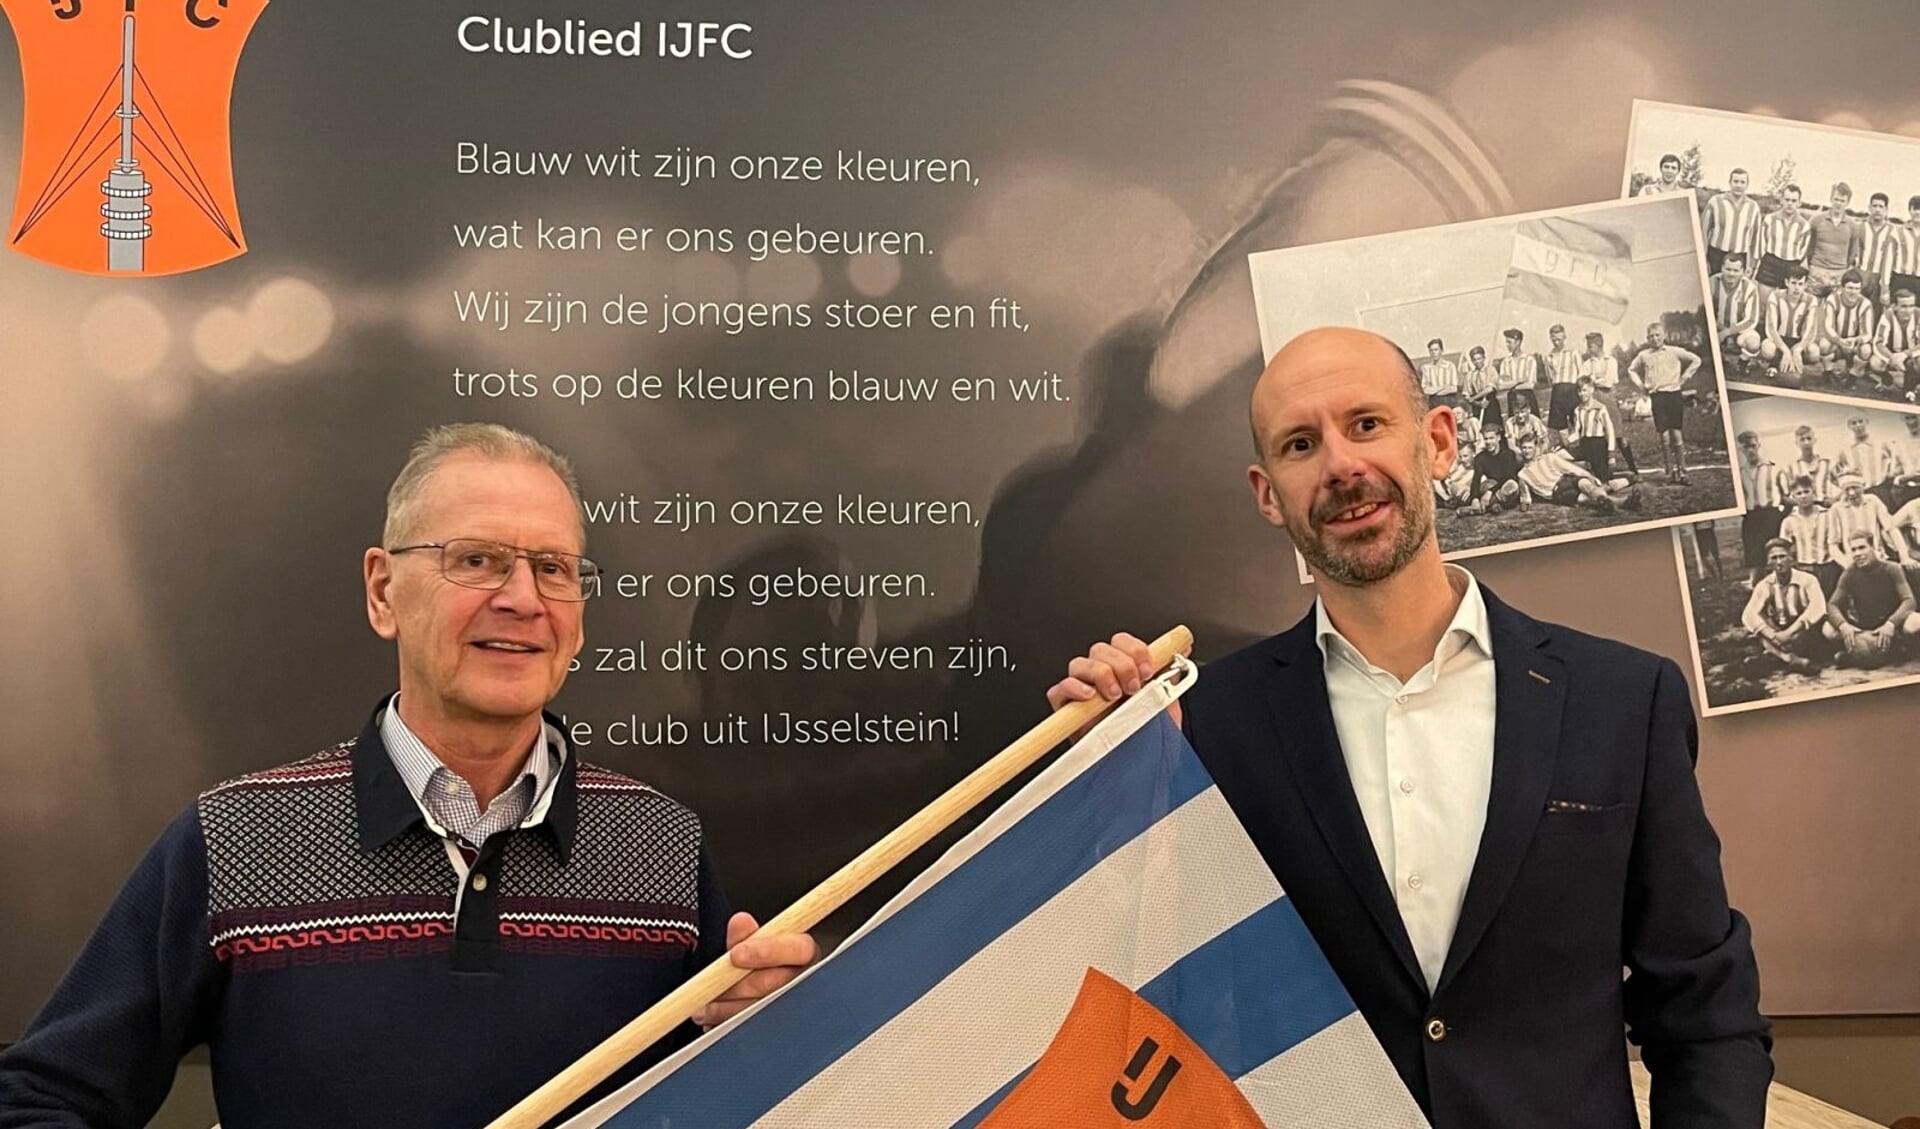 Een symbolische overdracht van het voorzitterschap van Johan Boer (links) naar Remco Bloemheuvel.